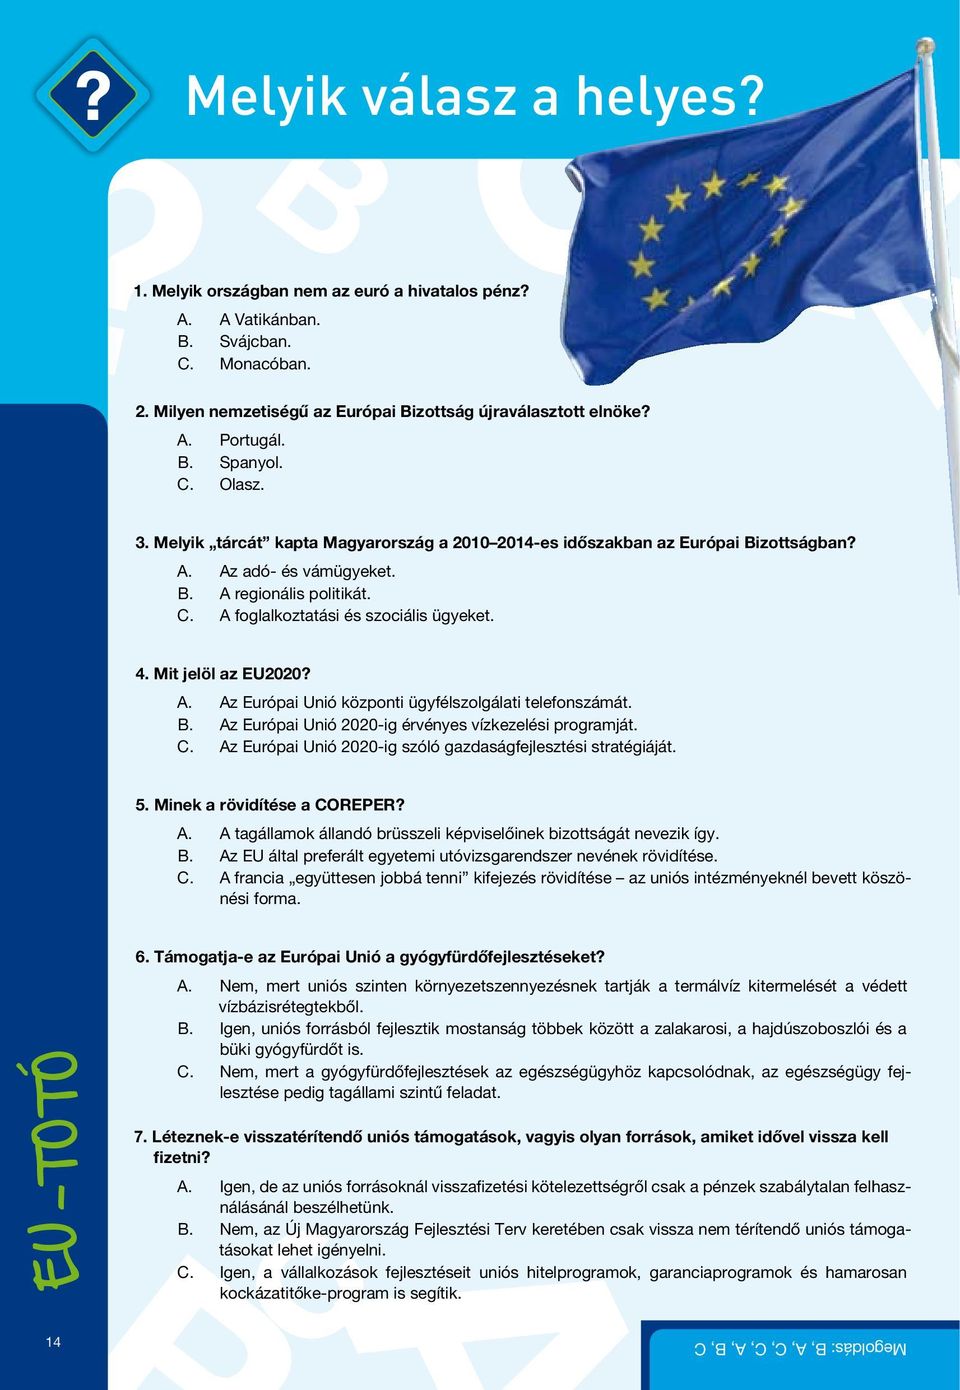 4. Mit jelöl az EU2020? A. Az Európai Unió központi ügyfélszolgálati telefonszámát. B. Az Európai Unió 2020-ig érvényes vízkezelési programját. C.